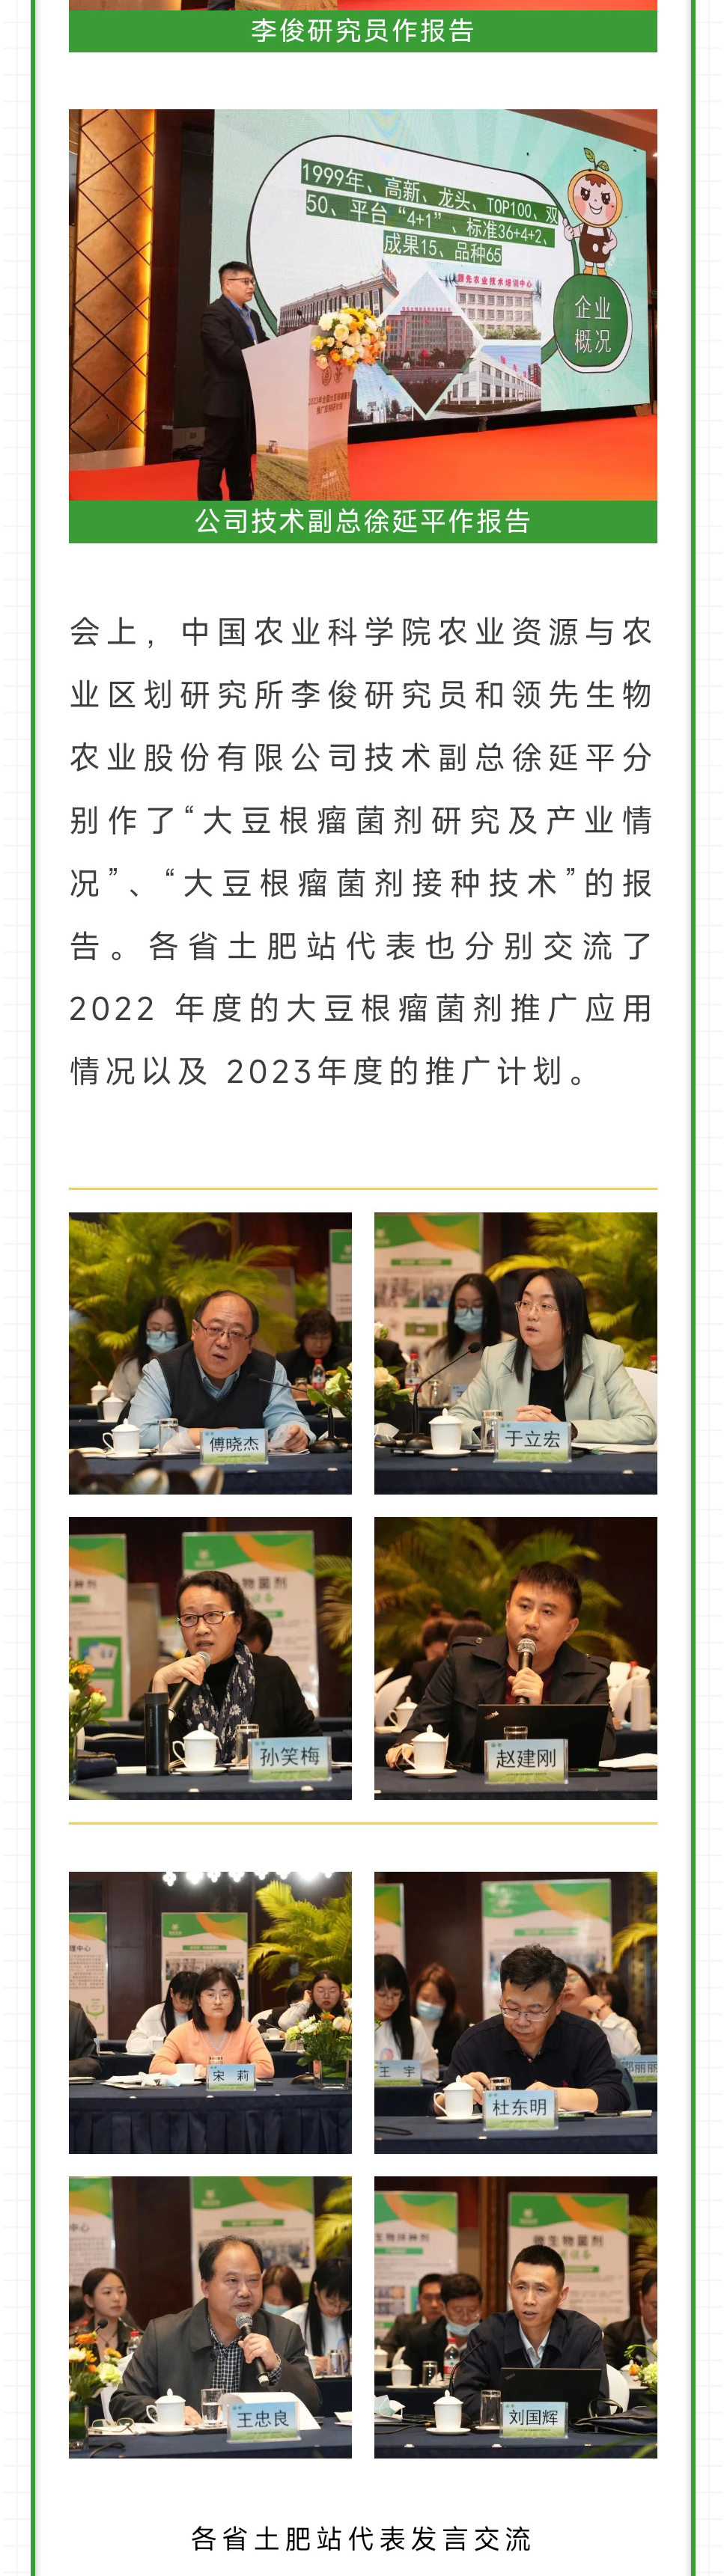 2023年全国大豆根瘤菌剂推广应用研讨会